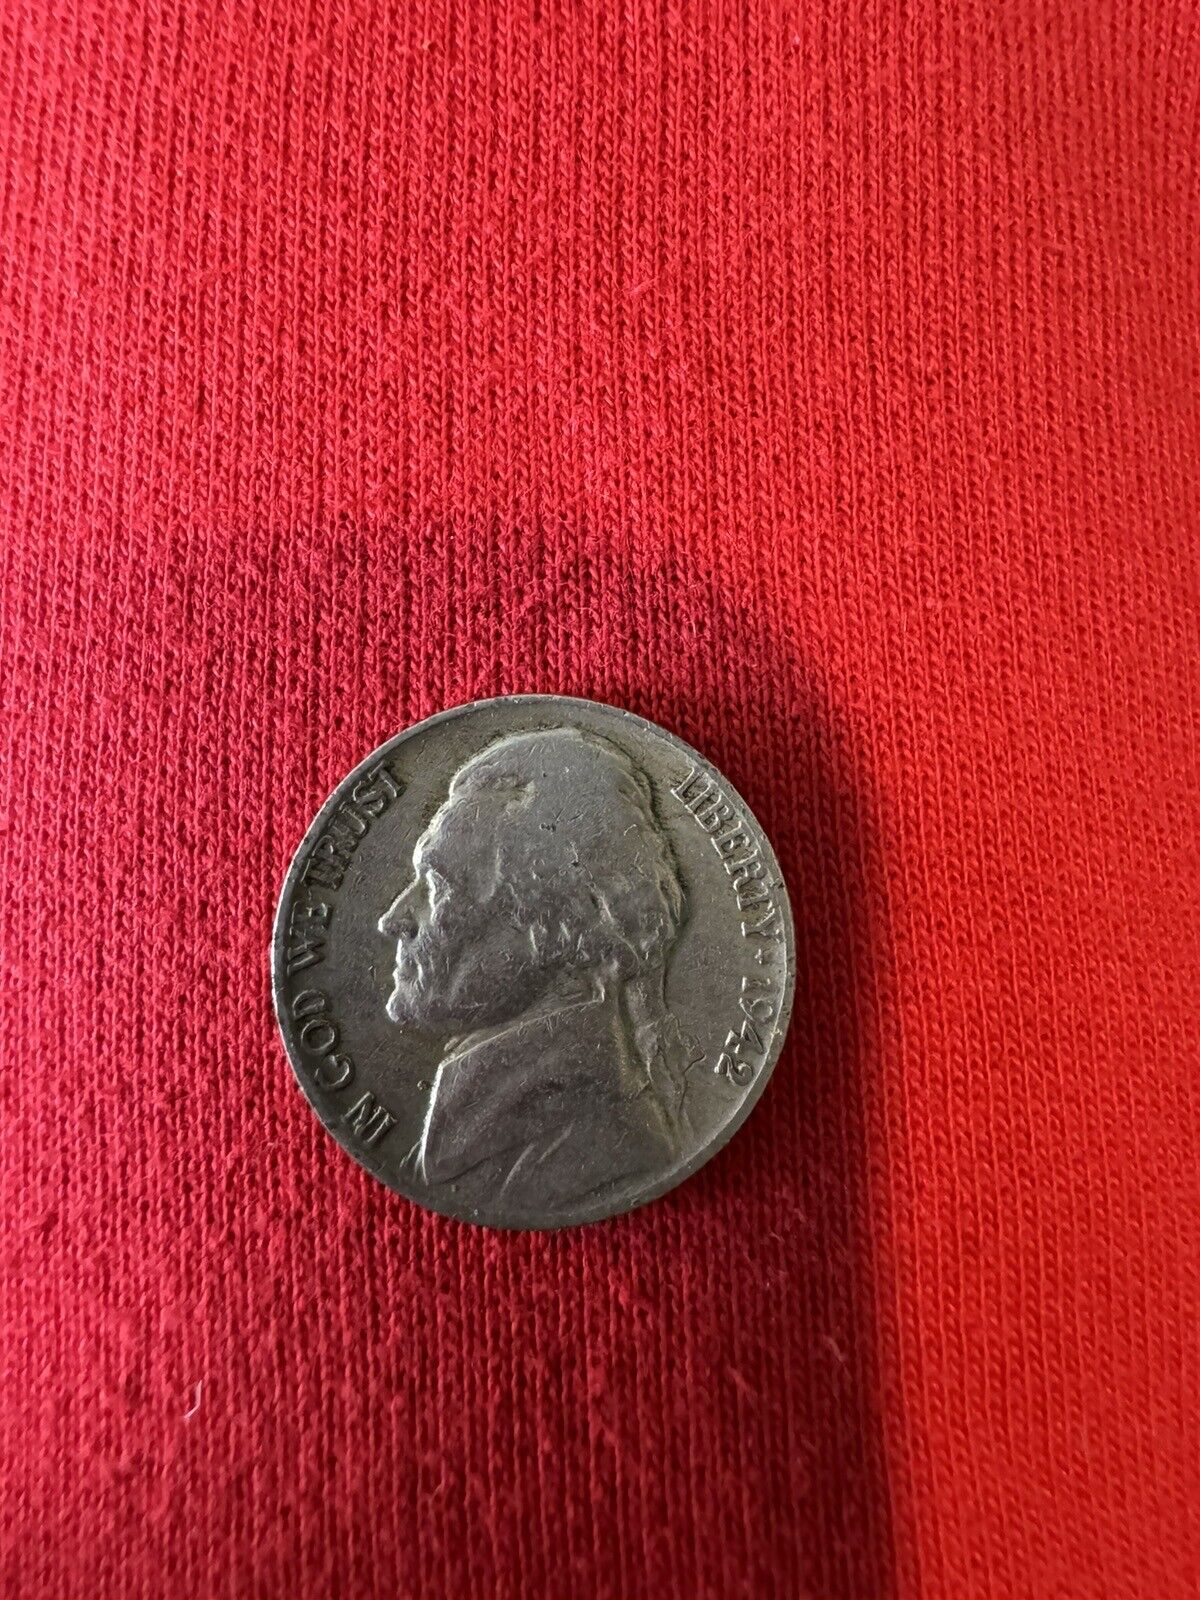 1942 (WAR NICKEL) Nickel No Mint Mark. Good Condition